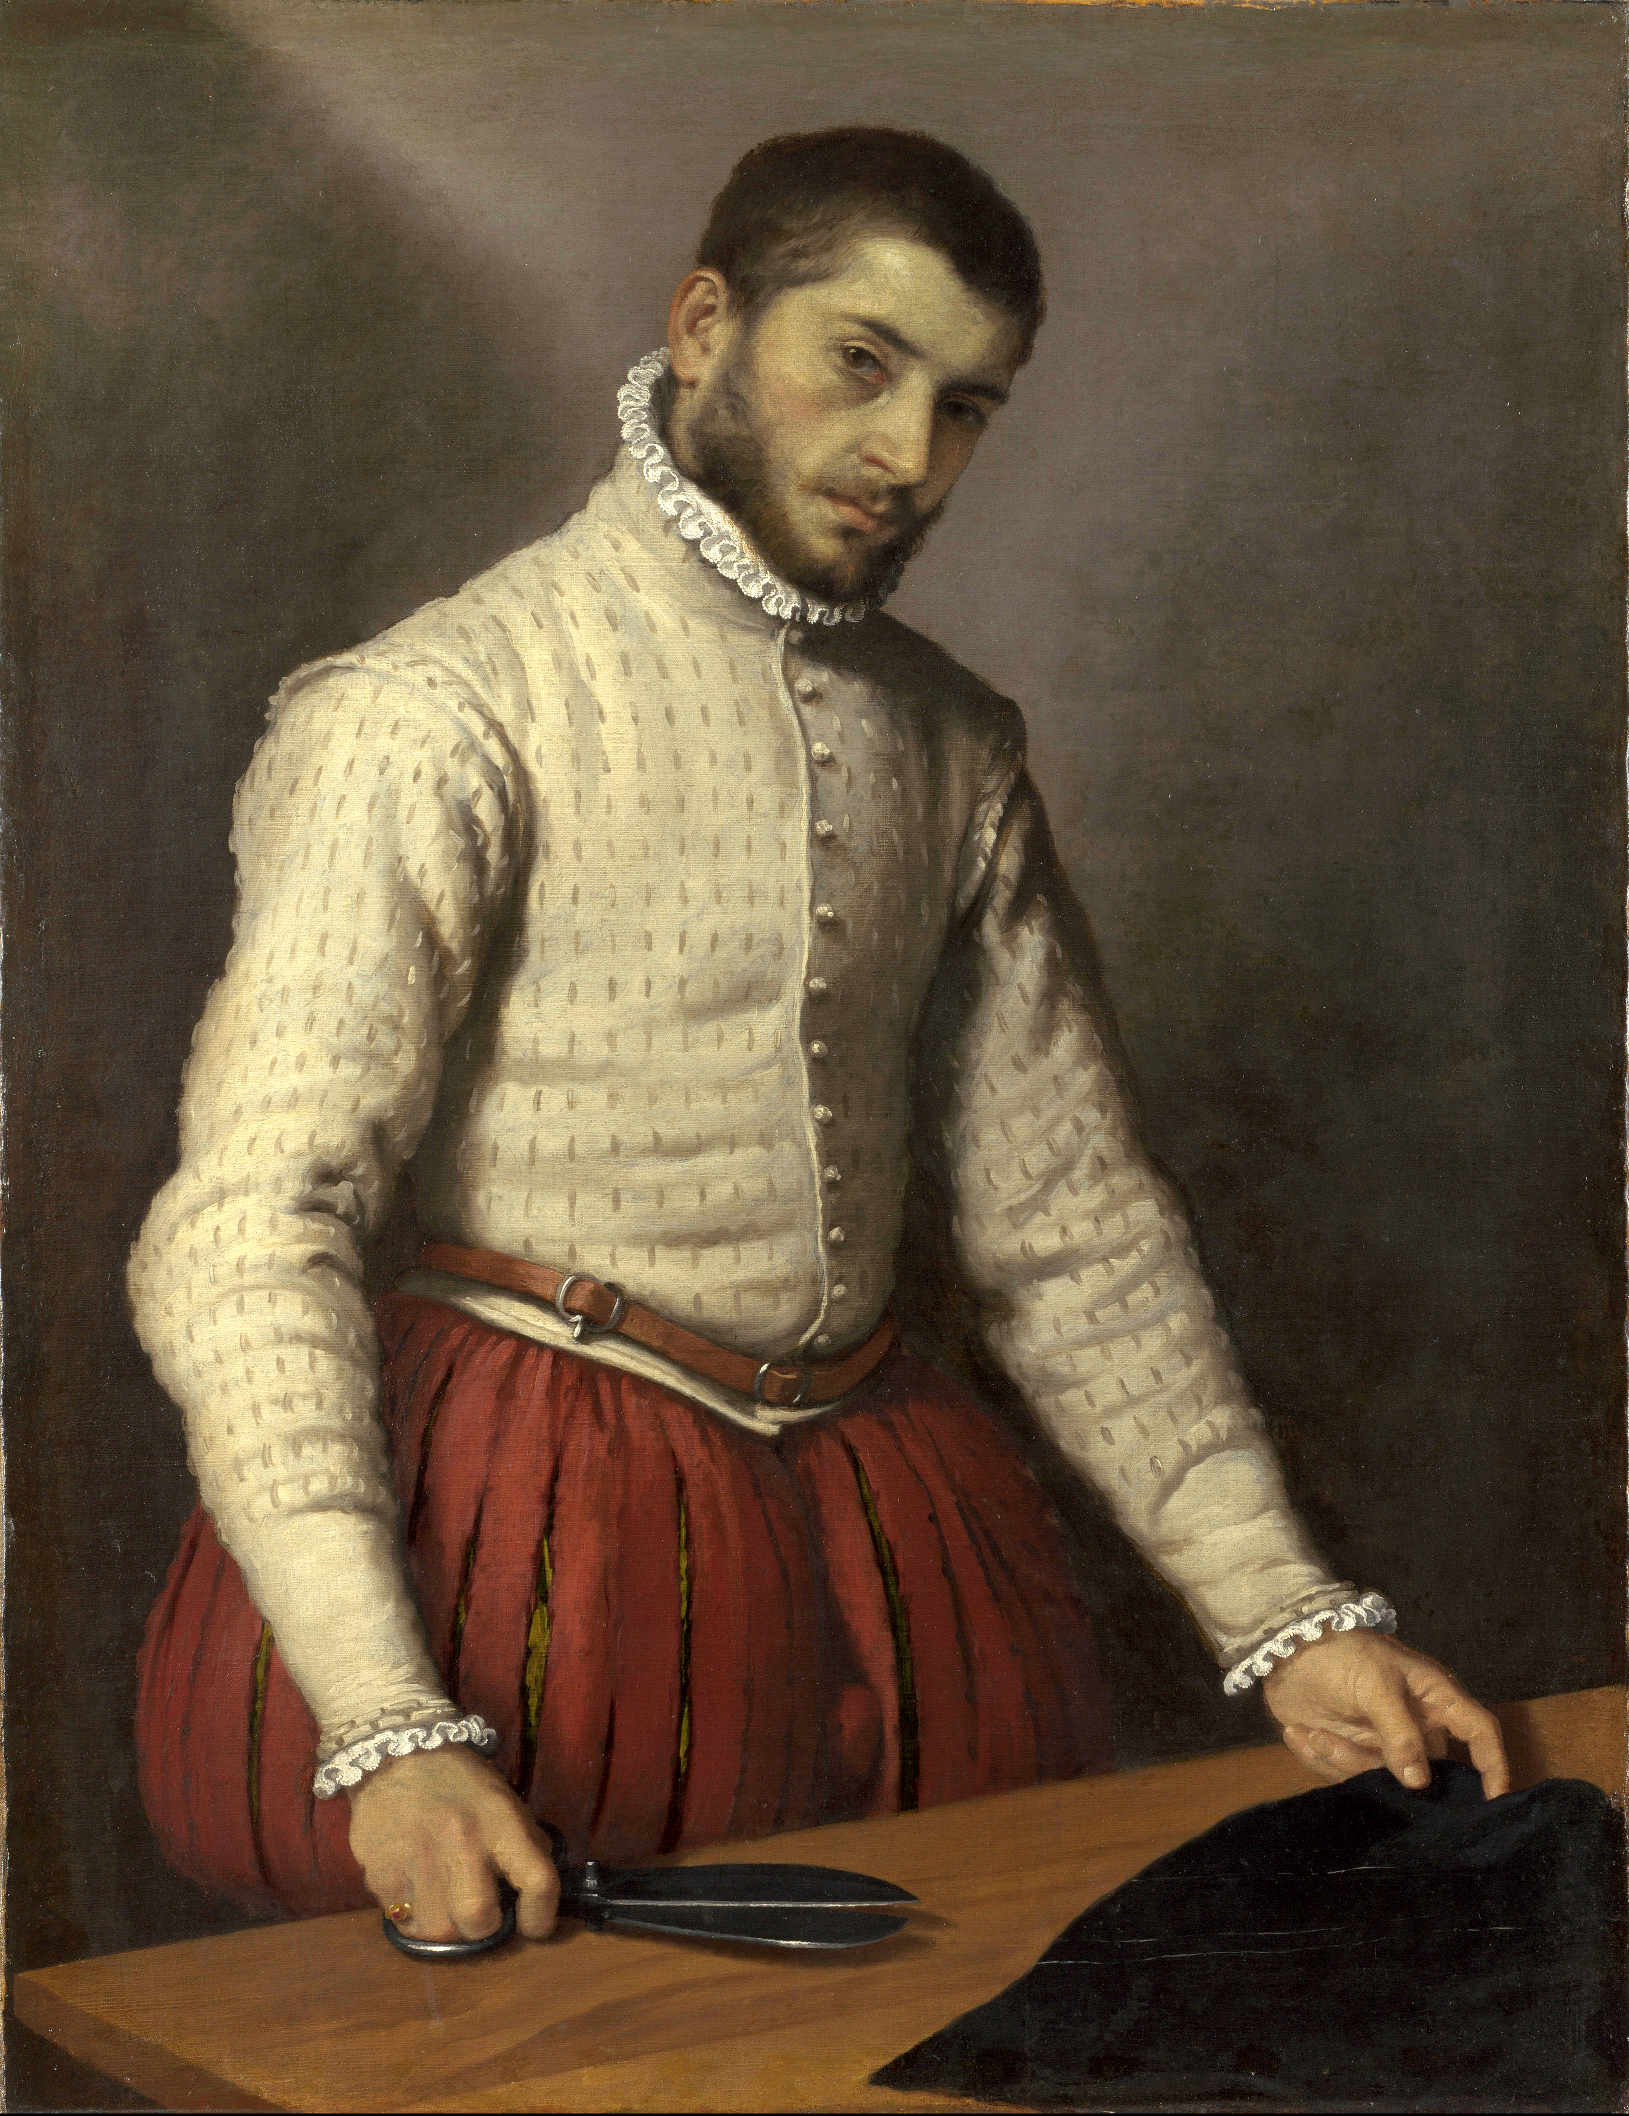 Giovanni Battista Moroni “Il Tagliapanni”, circa 1570